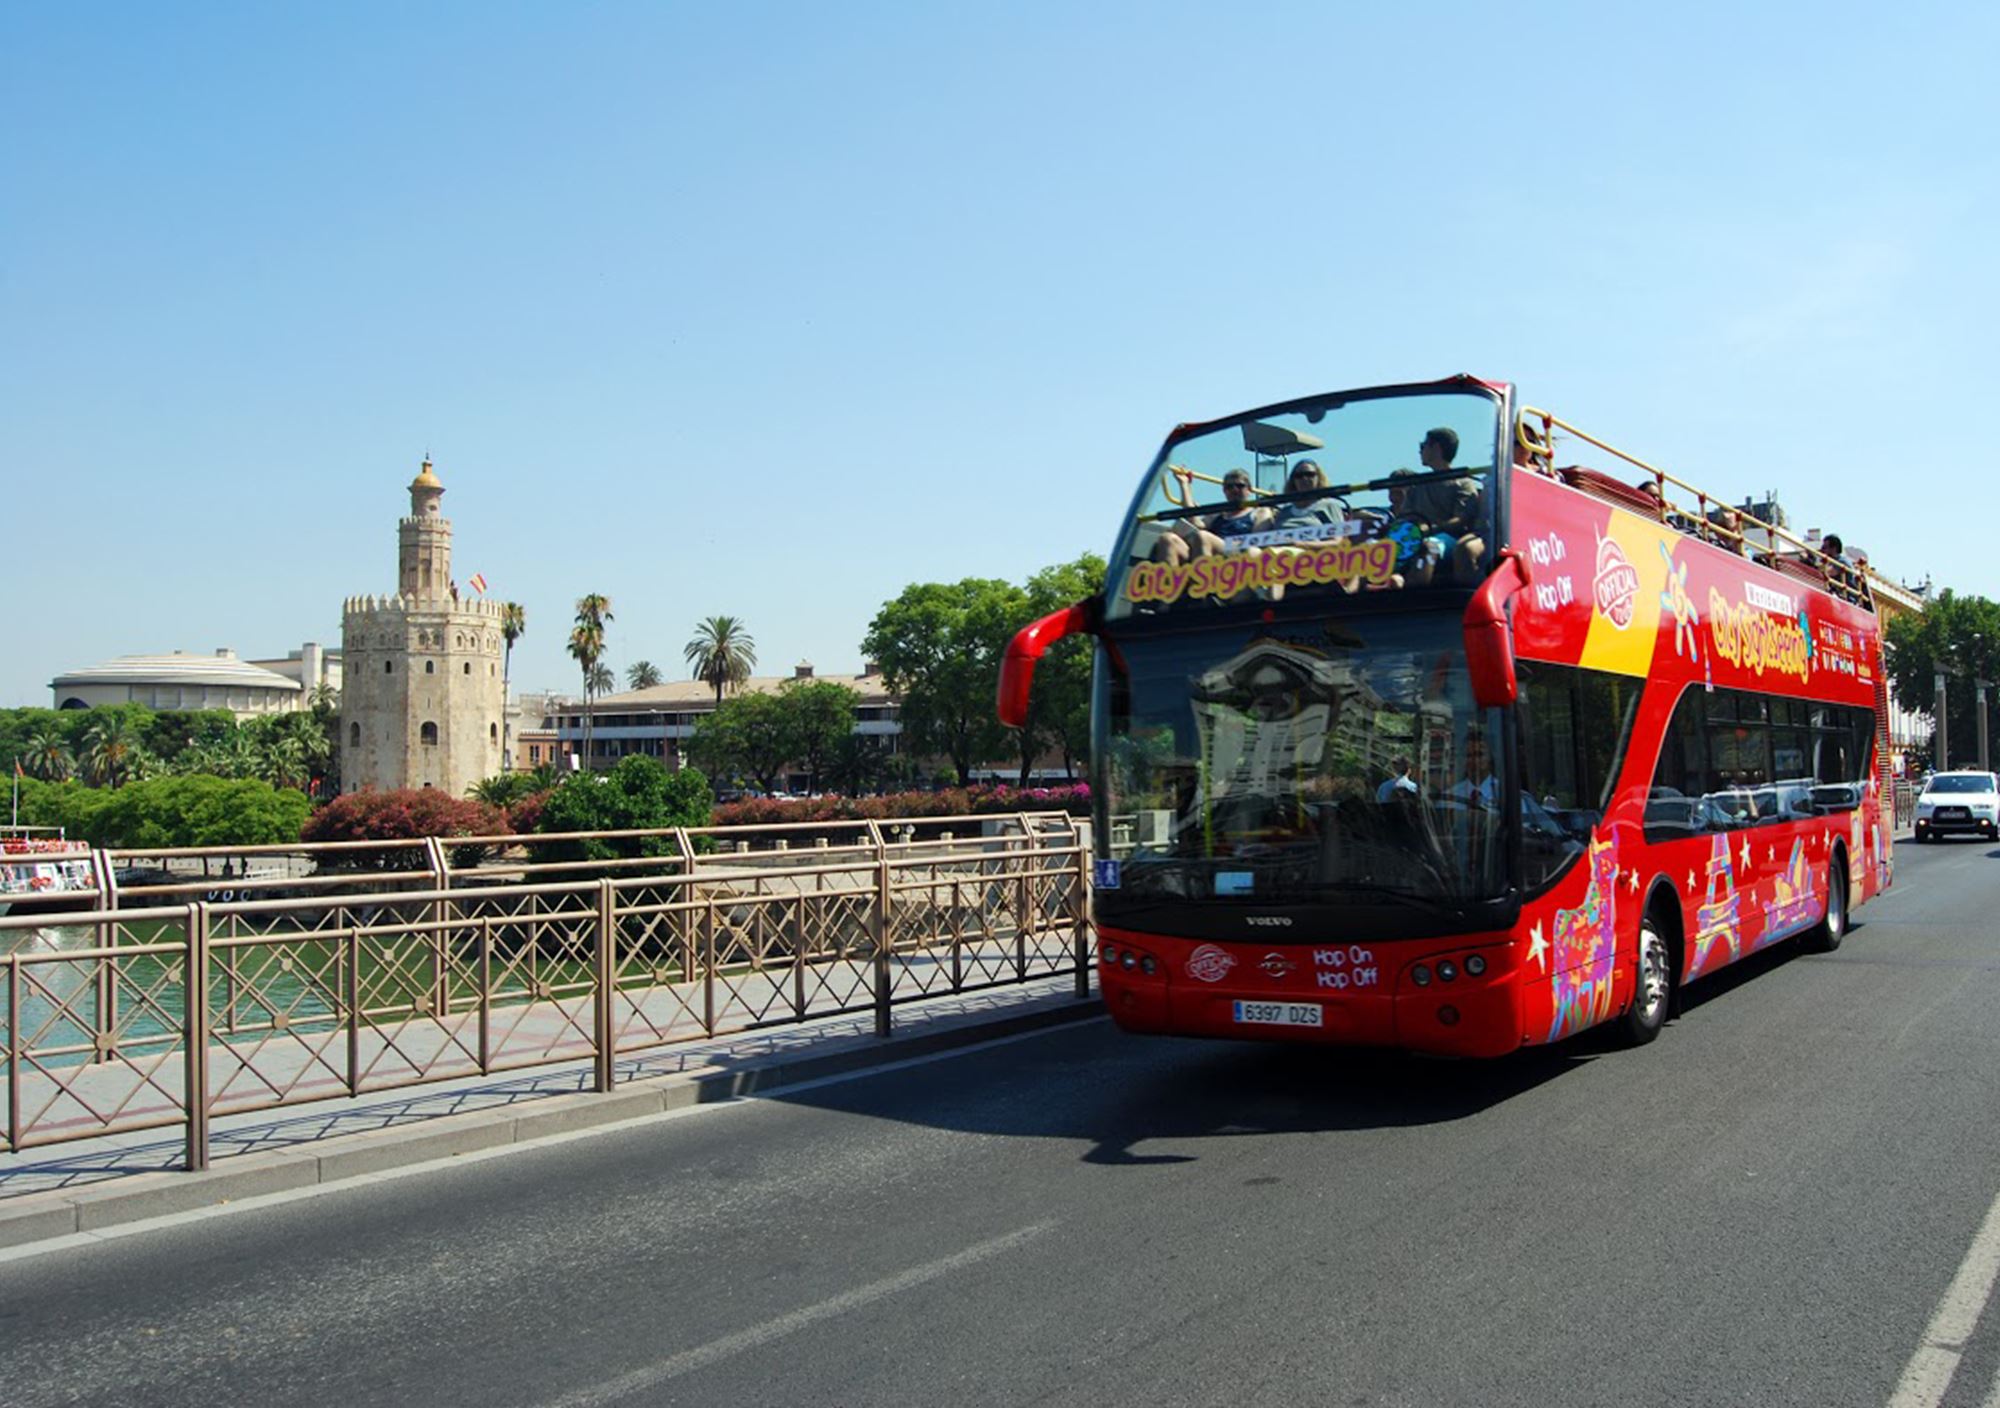 réservations réserver guidées tours Bus Touristique City Sightseeing Séville billets visiter